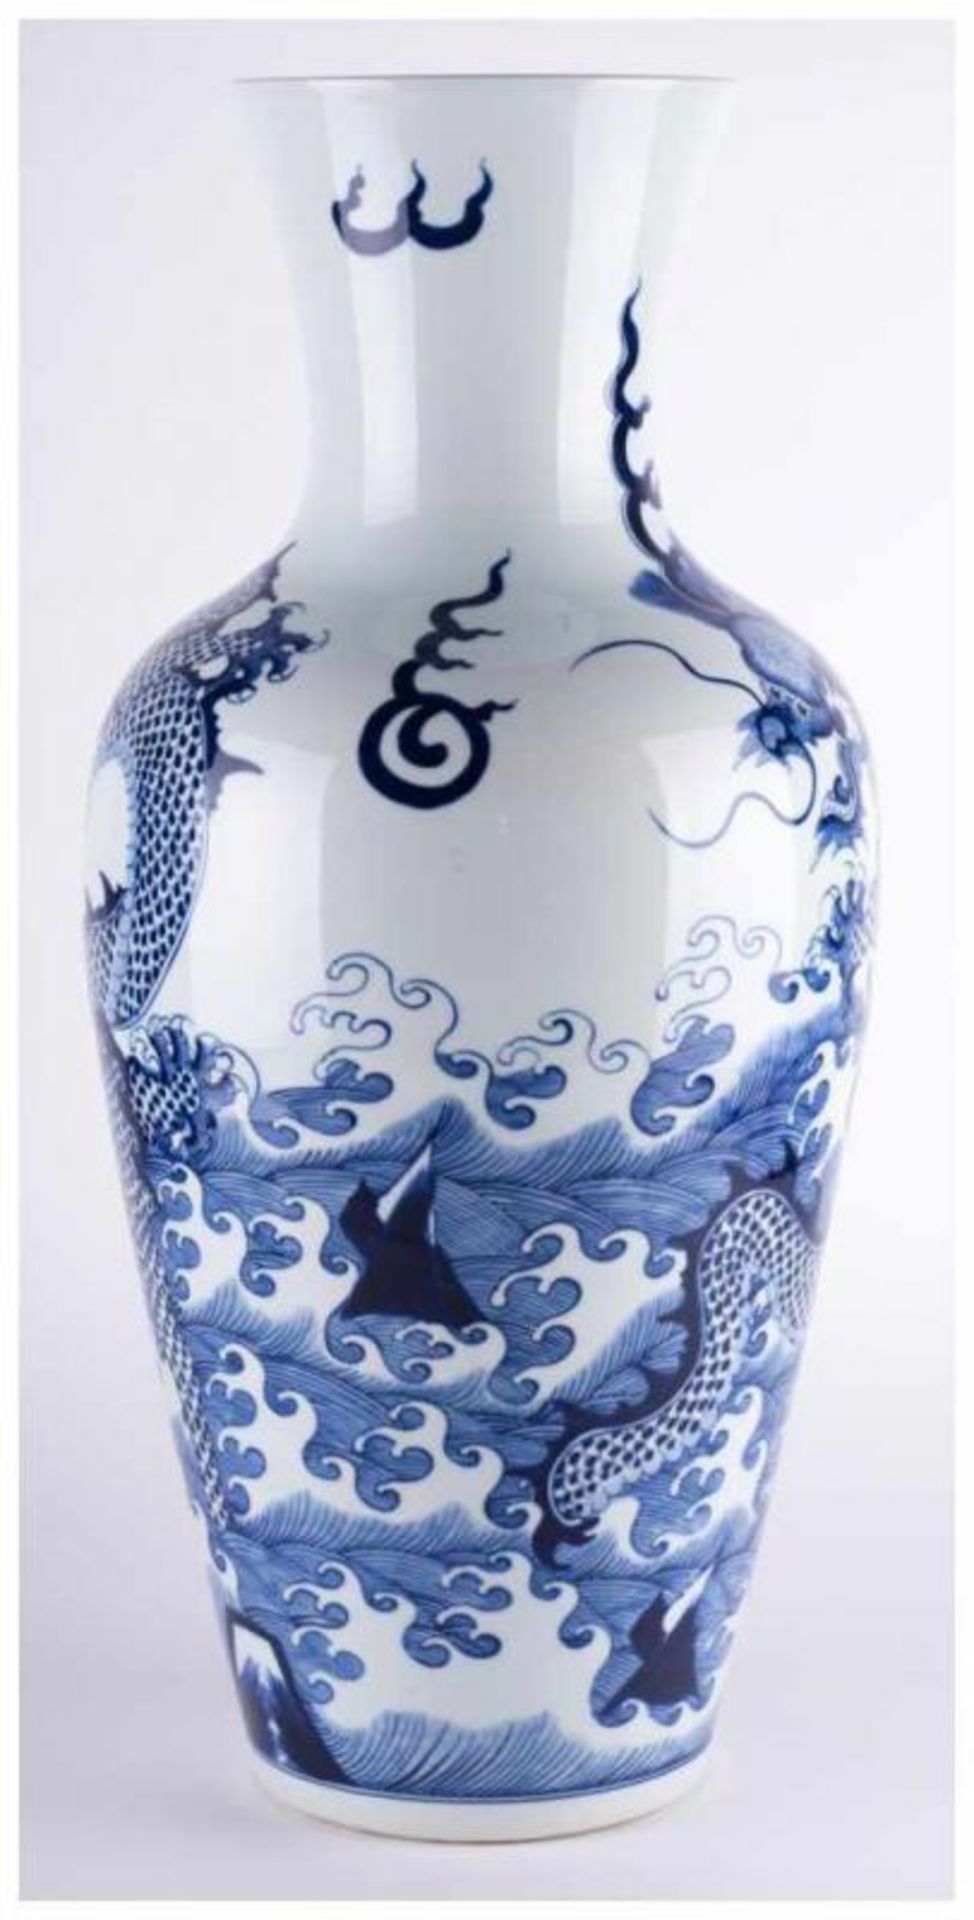 Vase China - Porzellan, blau weißer Drachendekor, Unterglasur, unterm Stand blaue [...] - Bild 3 aus 10